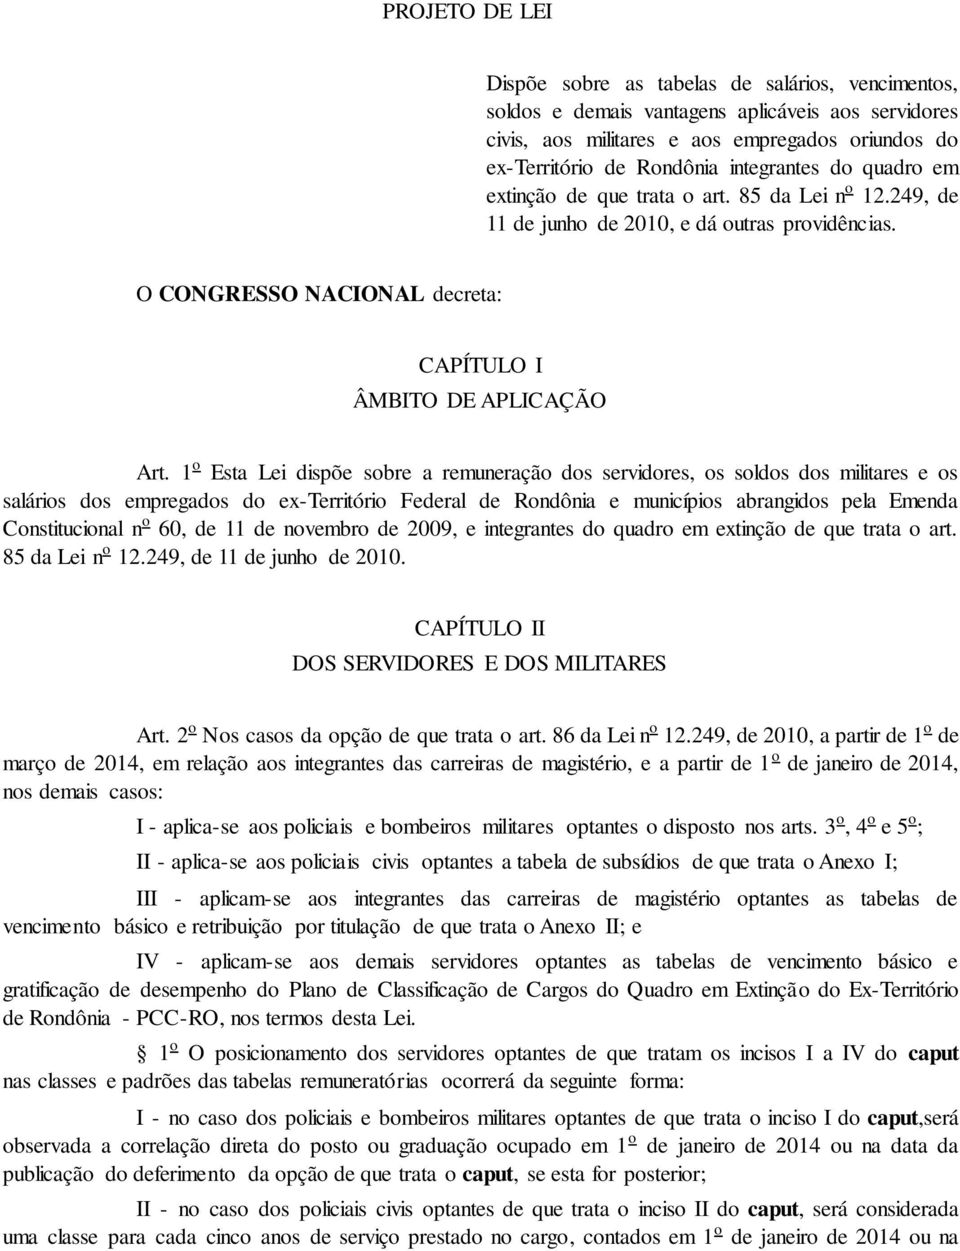 1 o Esta Lei dispõe sobre a remuneração dos servidores, os soldos dos militares e os salários dos empregados do ex-território Federal de Rondônia e municípios abrangidos pela Emenda Constitucional n